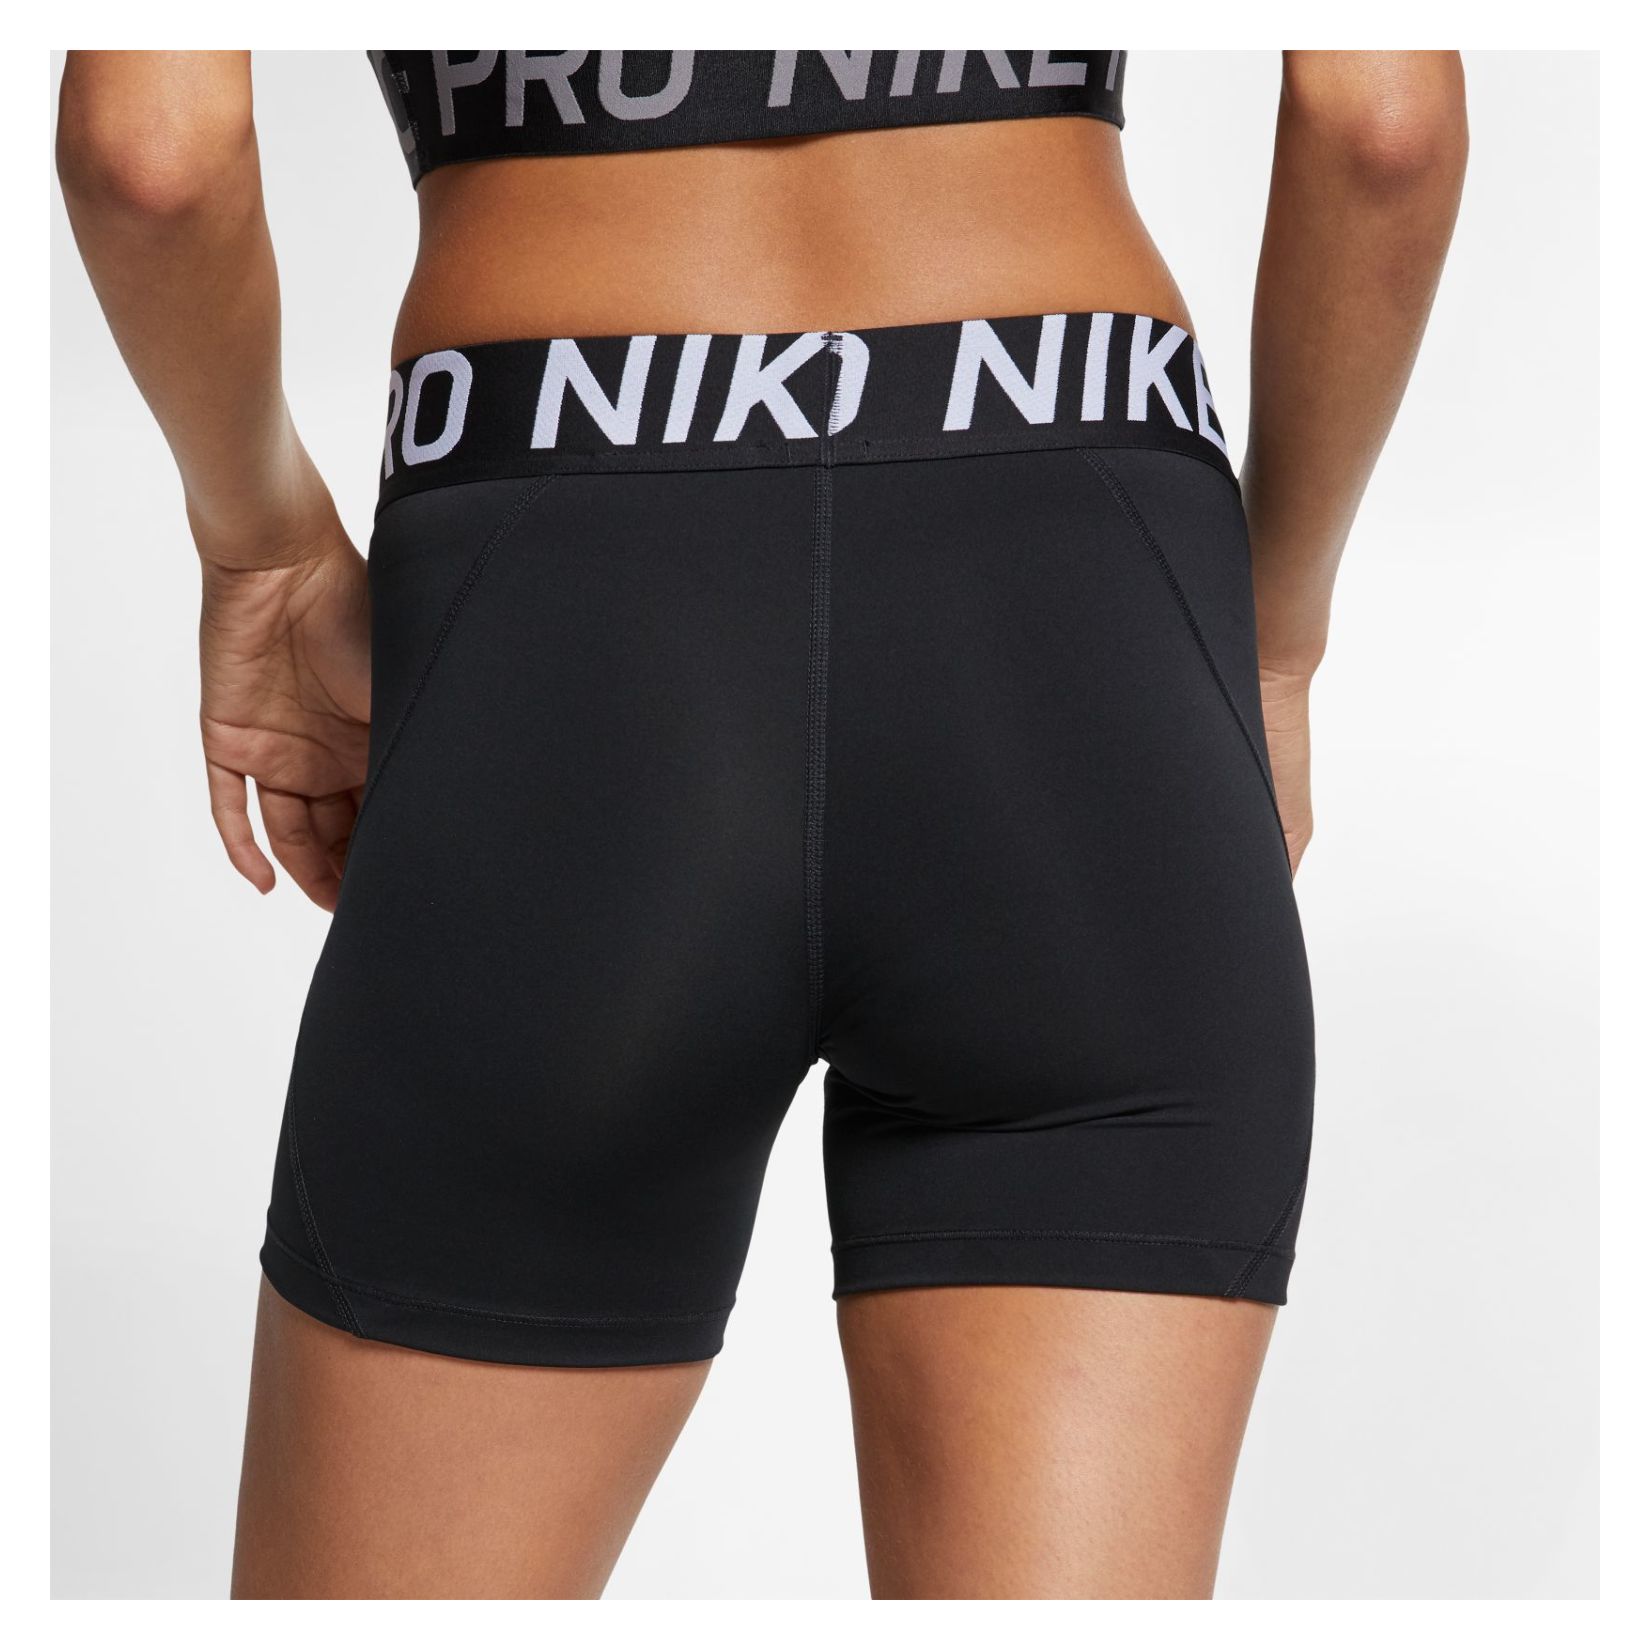 nike pro 5 inch shorts black